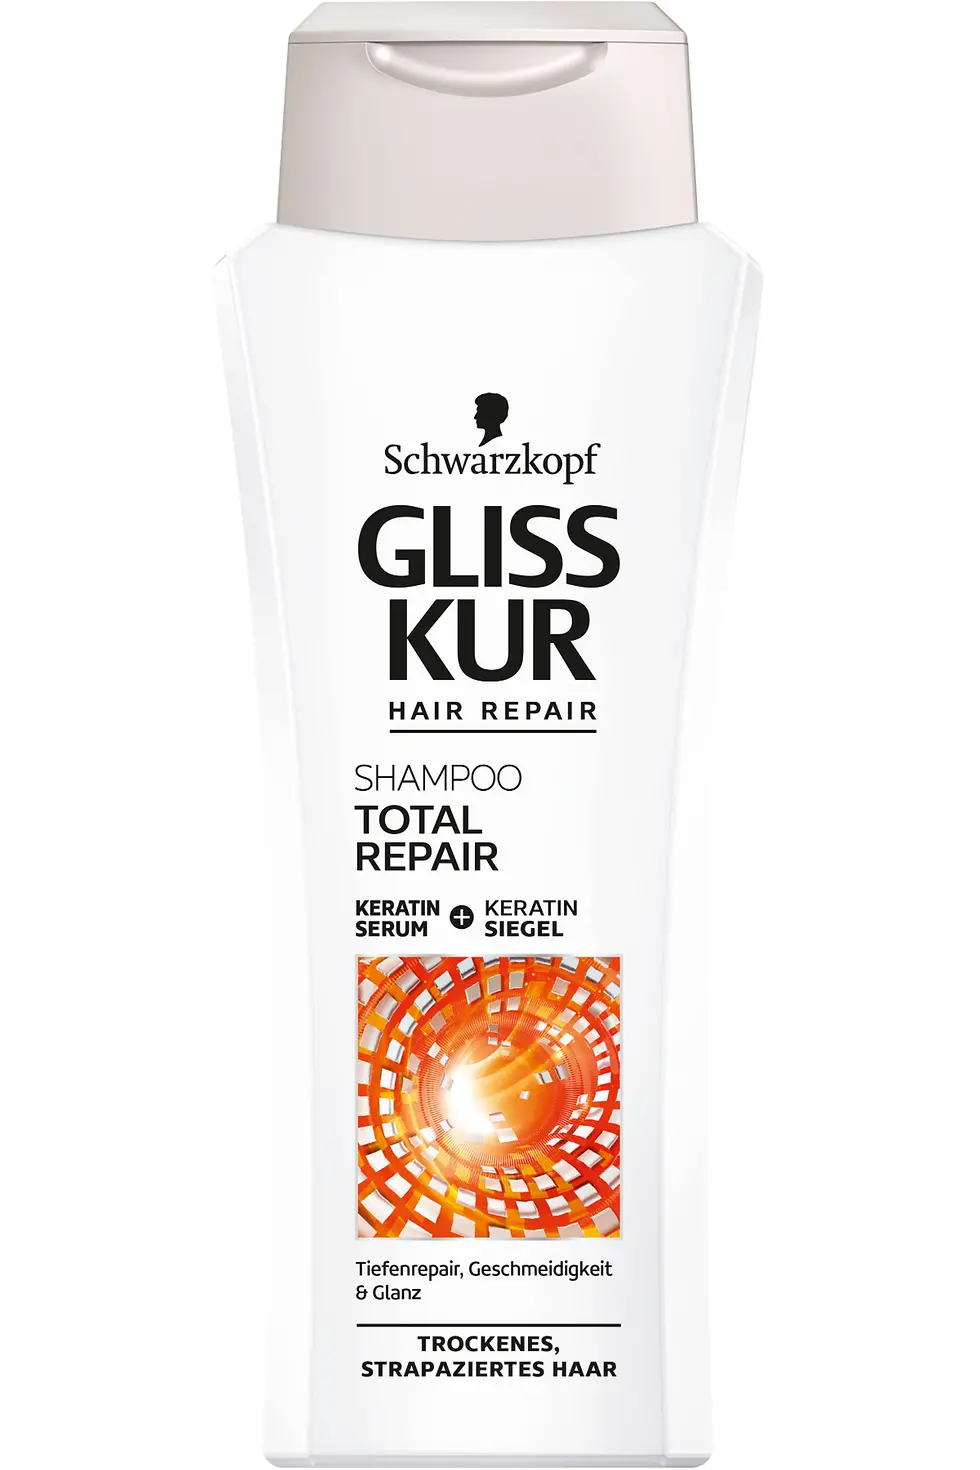 Gliss Kur Shampoo Total Repair